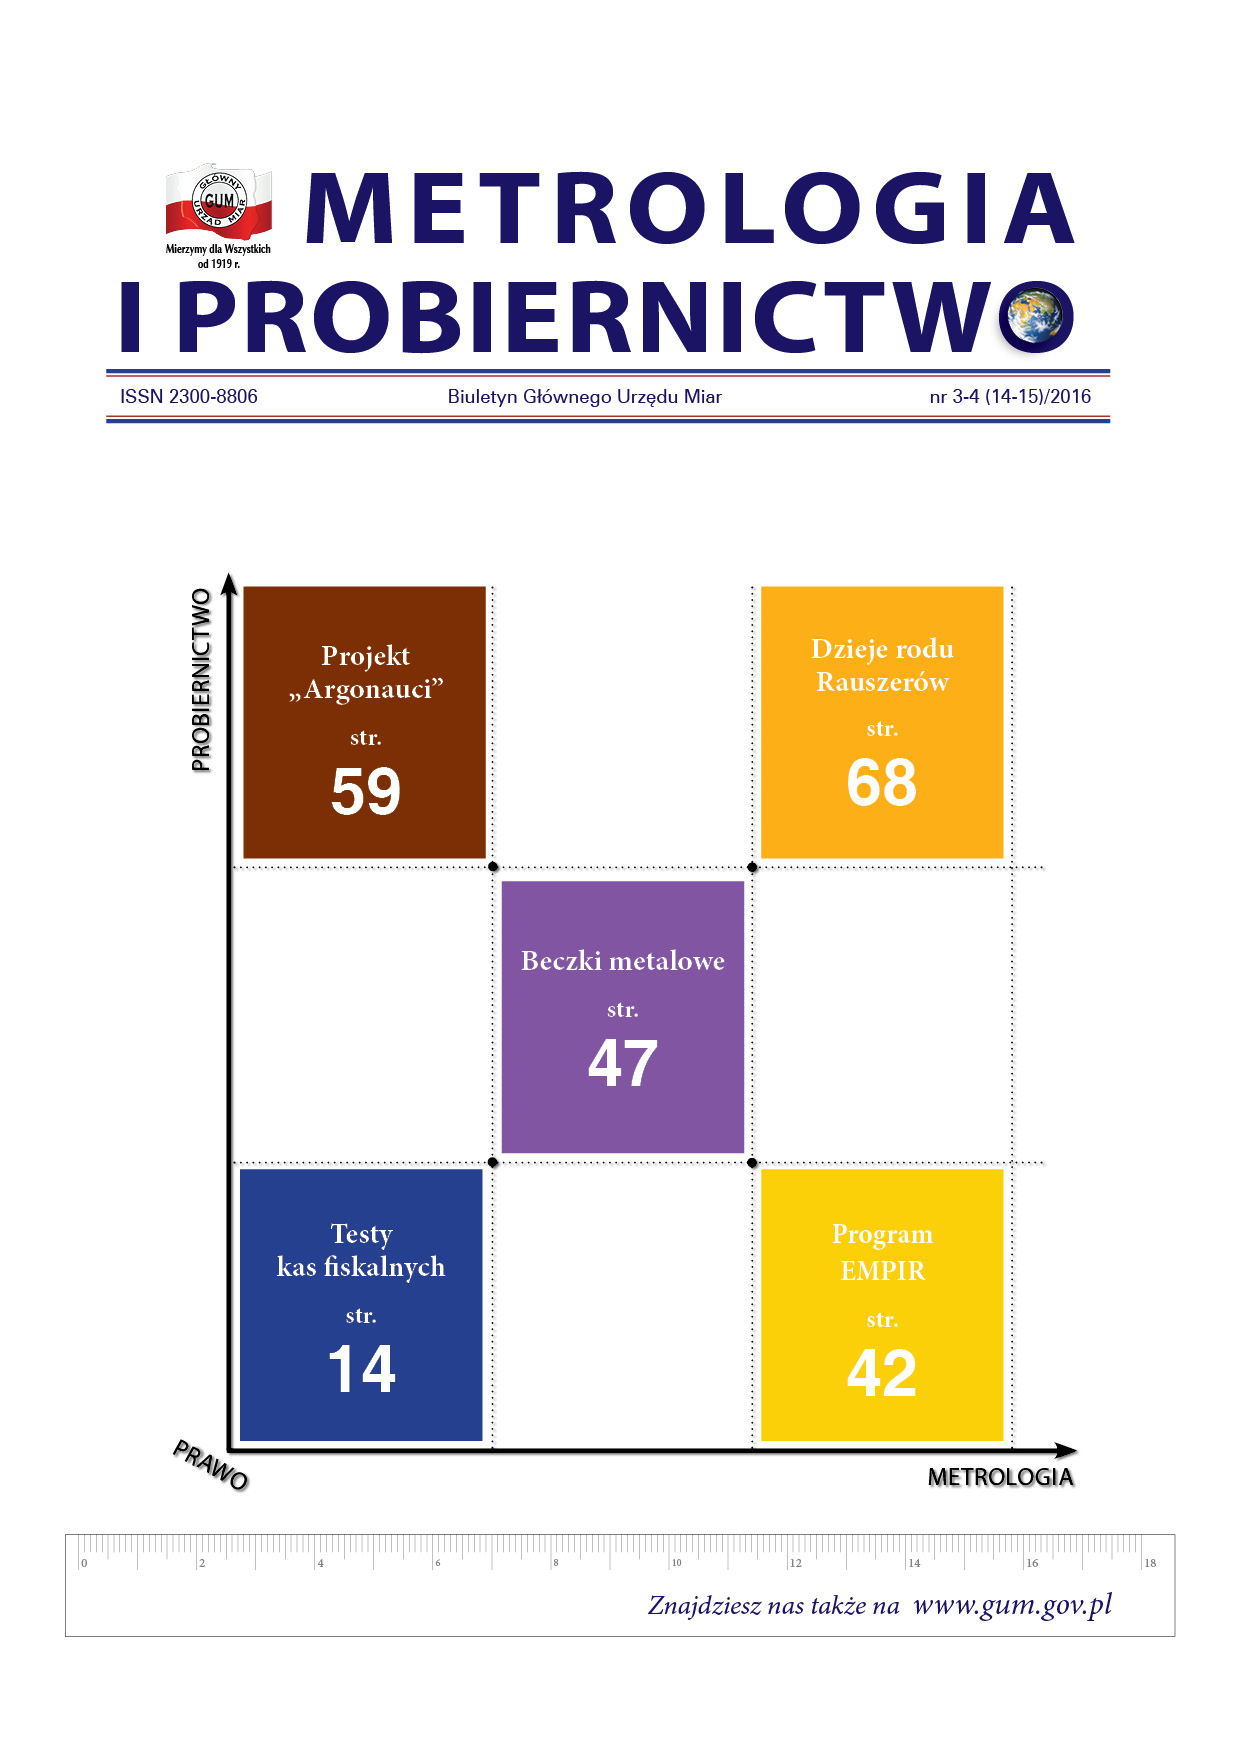 Okładka numeru Biuletynu GUM Metrologia i Probiernictwo z lat 2013-2017. Na okładce 5 tytułów artykułów ułożonych w różnokolorowe prostokąty w kształcie szachownicy.